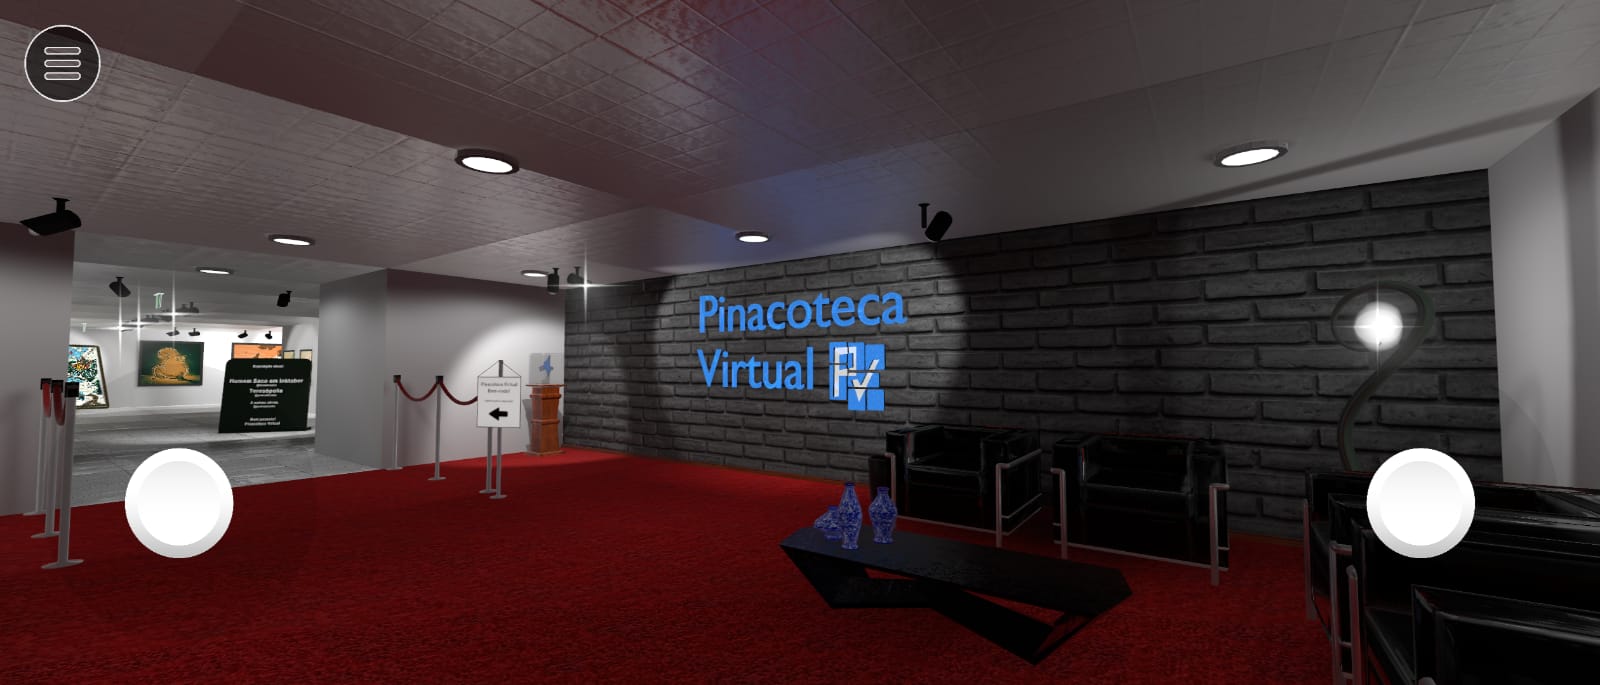 Pinacoteca Virtual